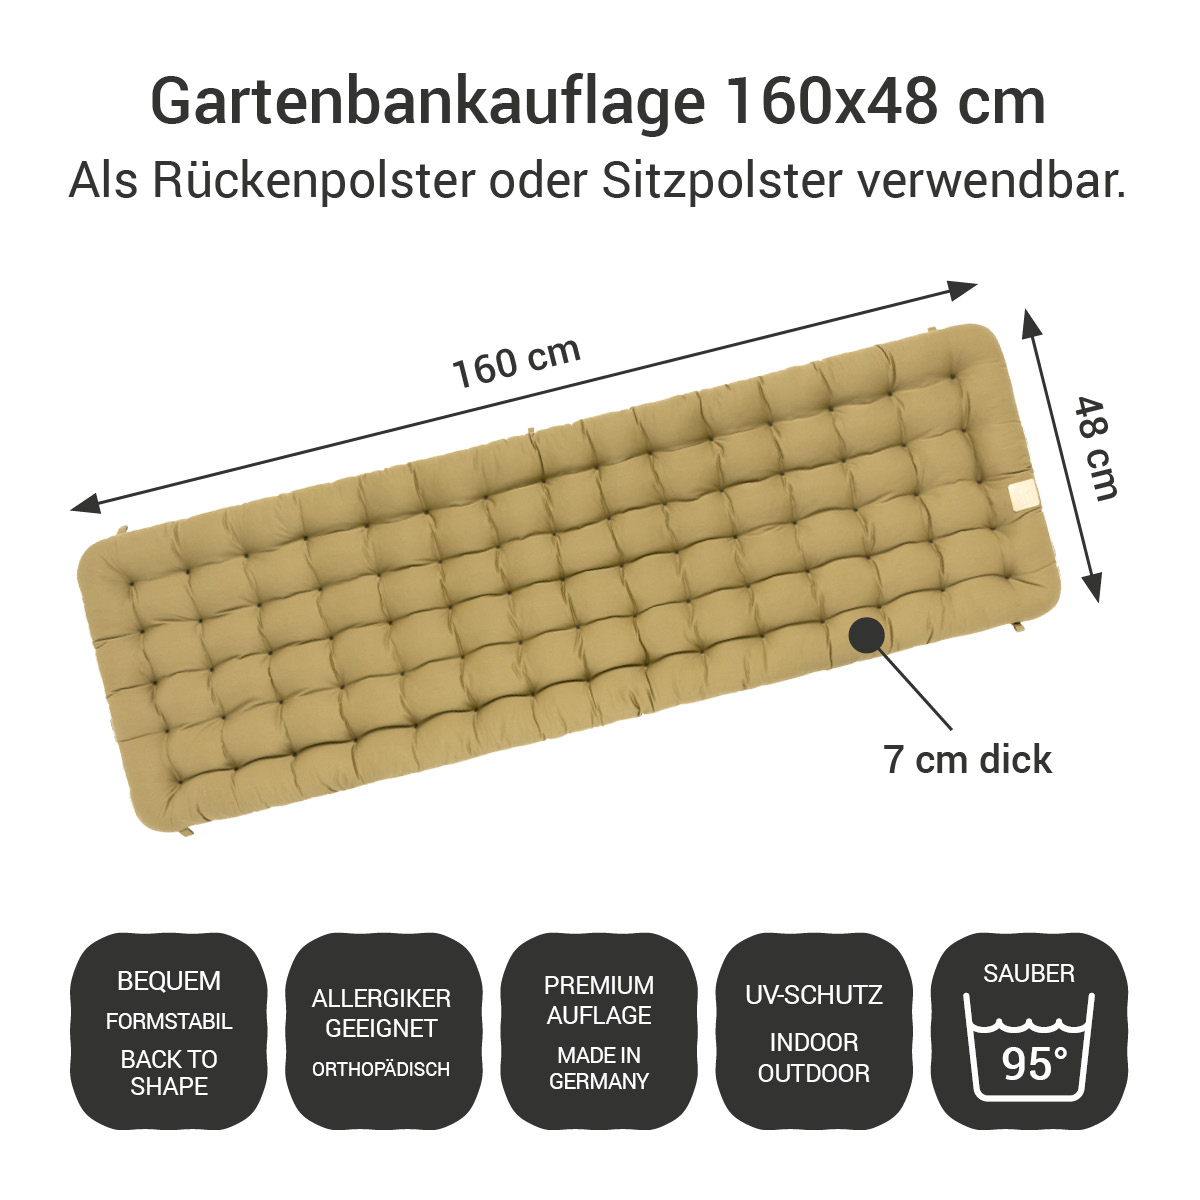 Gartenbank Auflage beige 160x48 cm / 160 x 50 cm | bequem & orthopädisch, komplett im Ganzen waschbar bis 95°C, wetterfest, Made in Germany